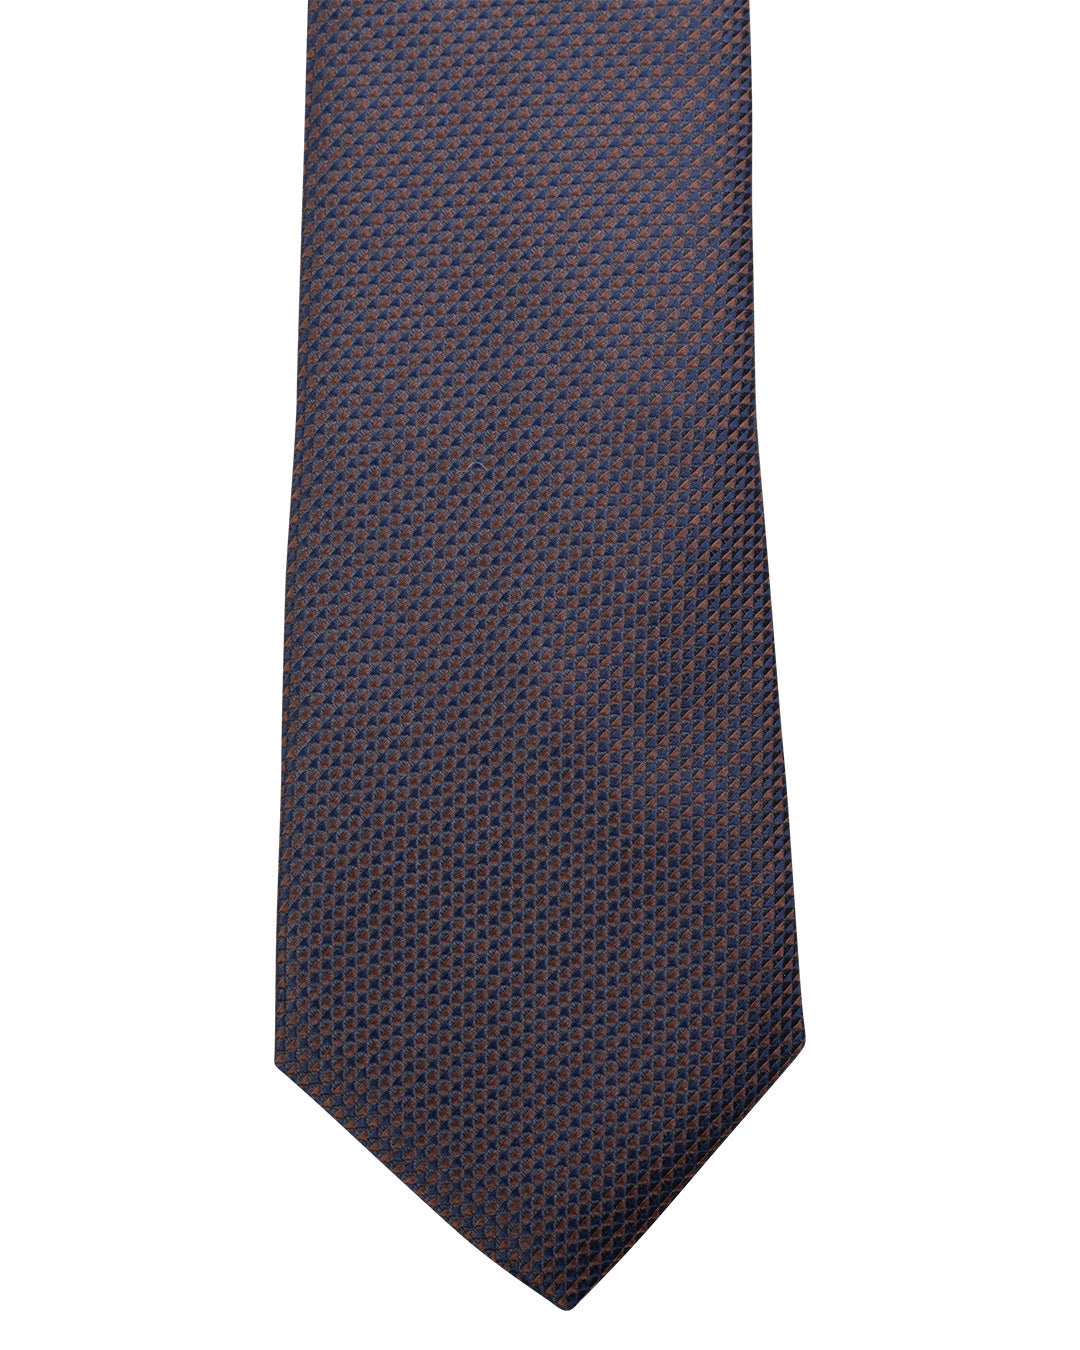 Brown Oxford Weave Italian Silk Skinny Tie